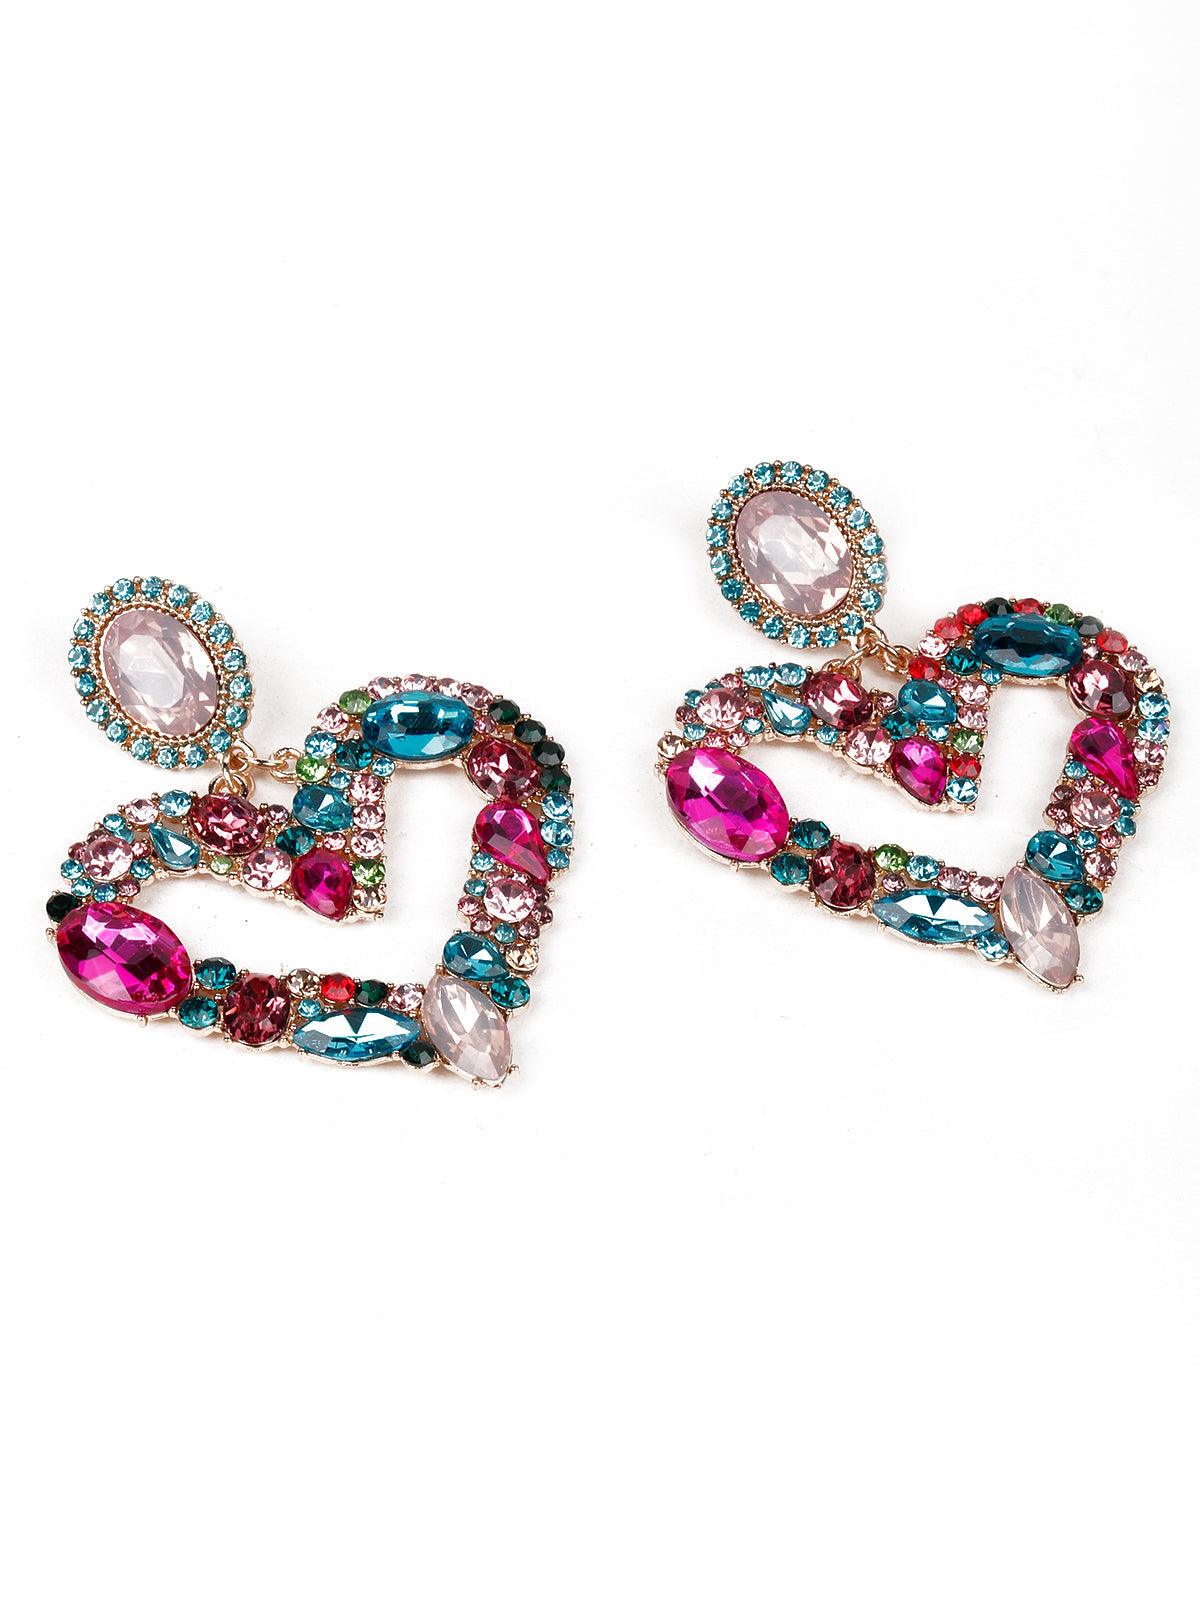 Women's Designer Heart-Shaped Statement Earrings - Odette